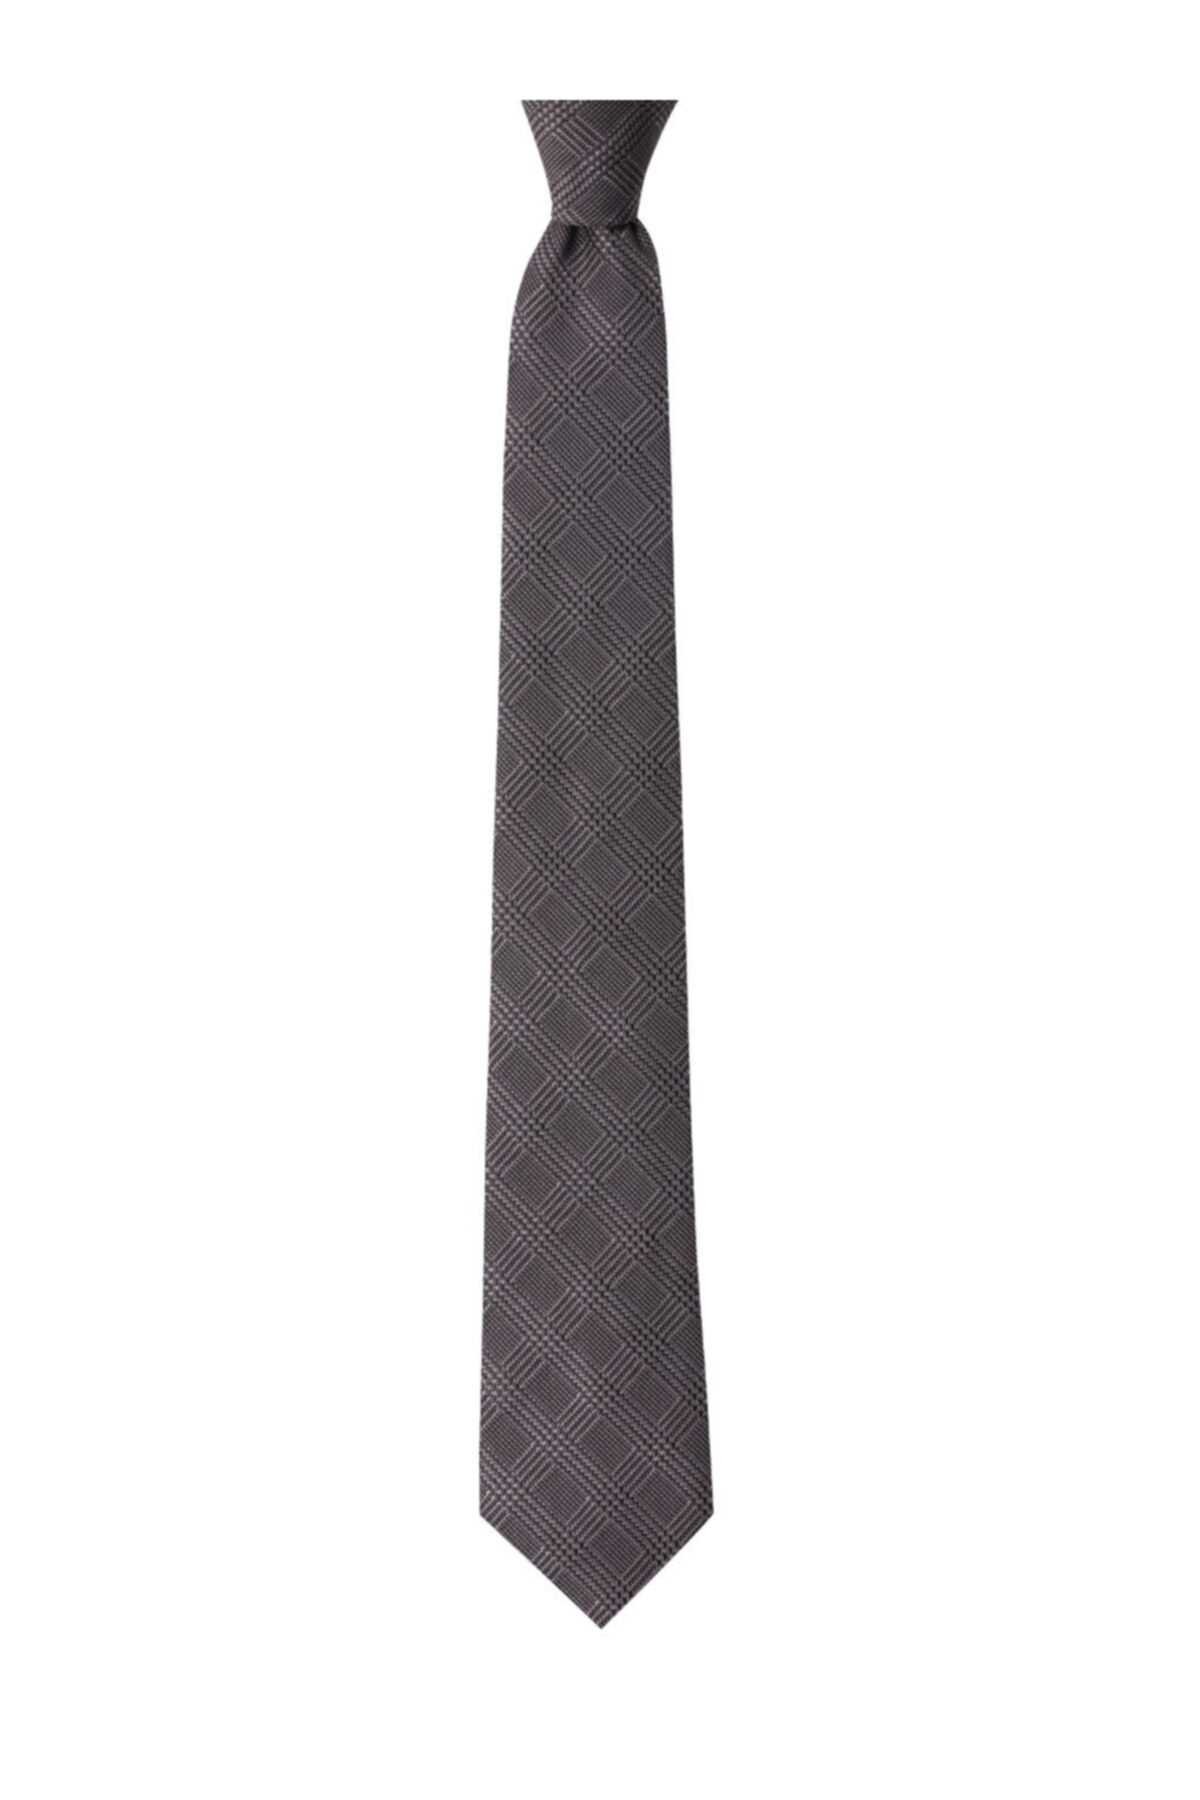 خرید مستقیم کراوات مردانه جدید برند 1001 Kravat رنگ نقره ای کد ty48130339